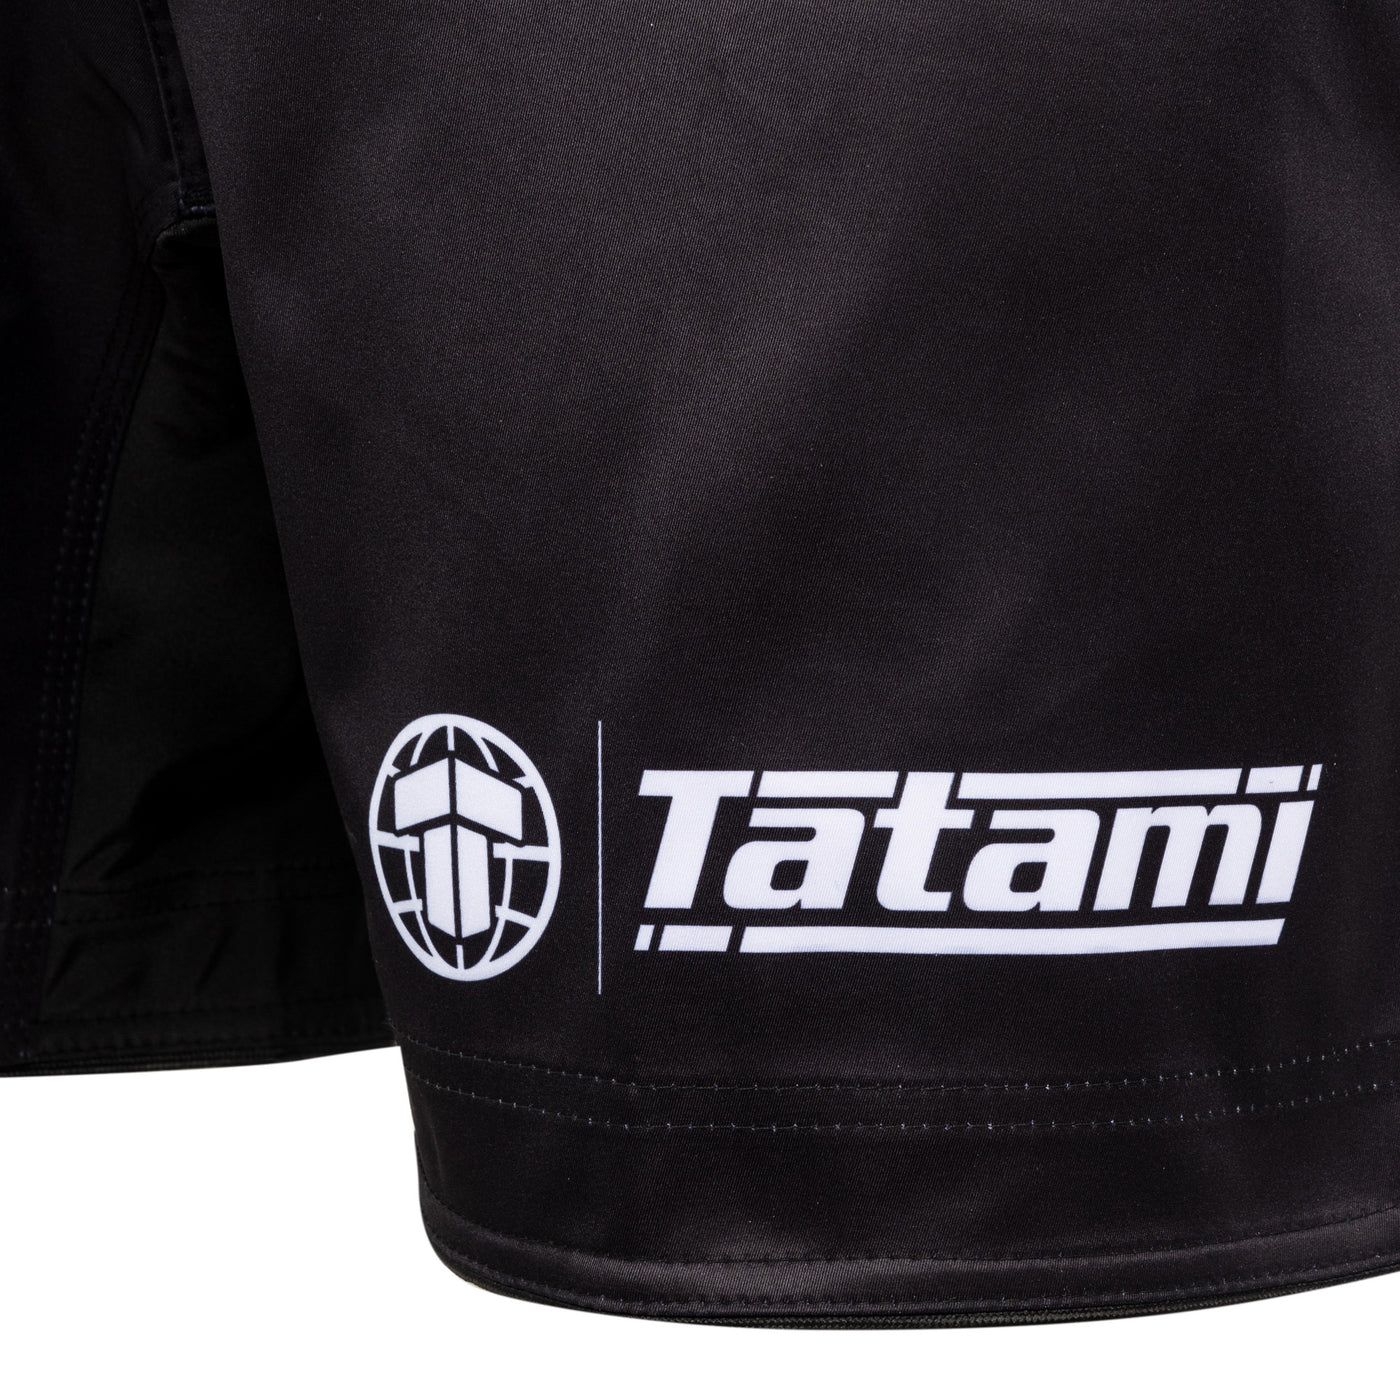 Tatami Impact Grappling Shorts